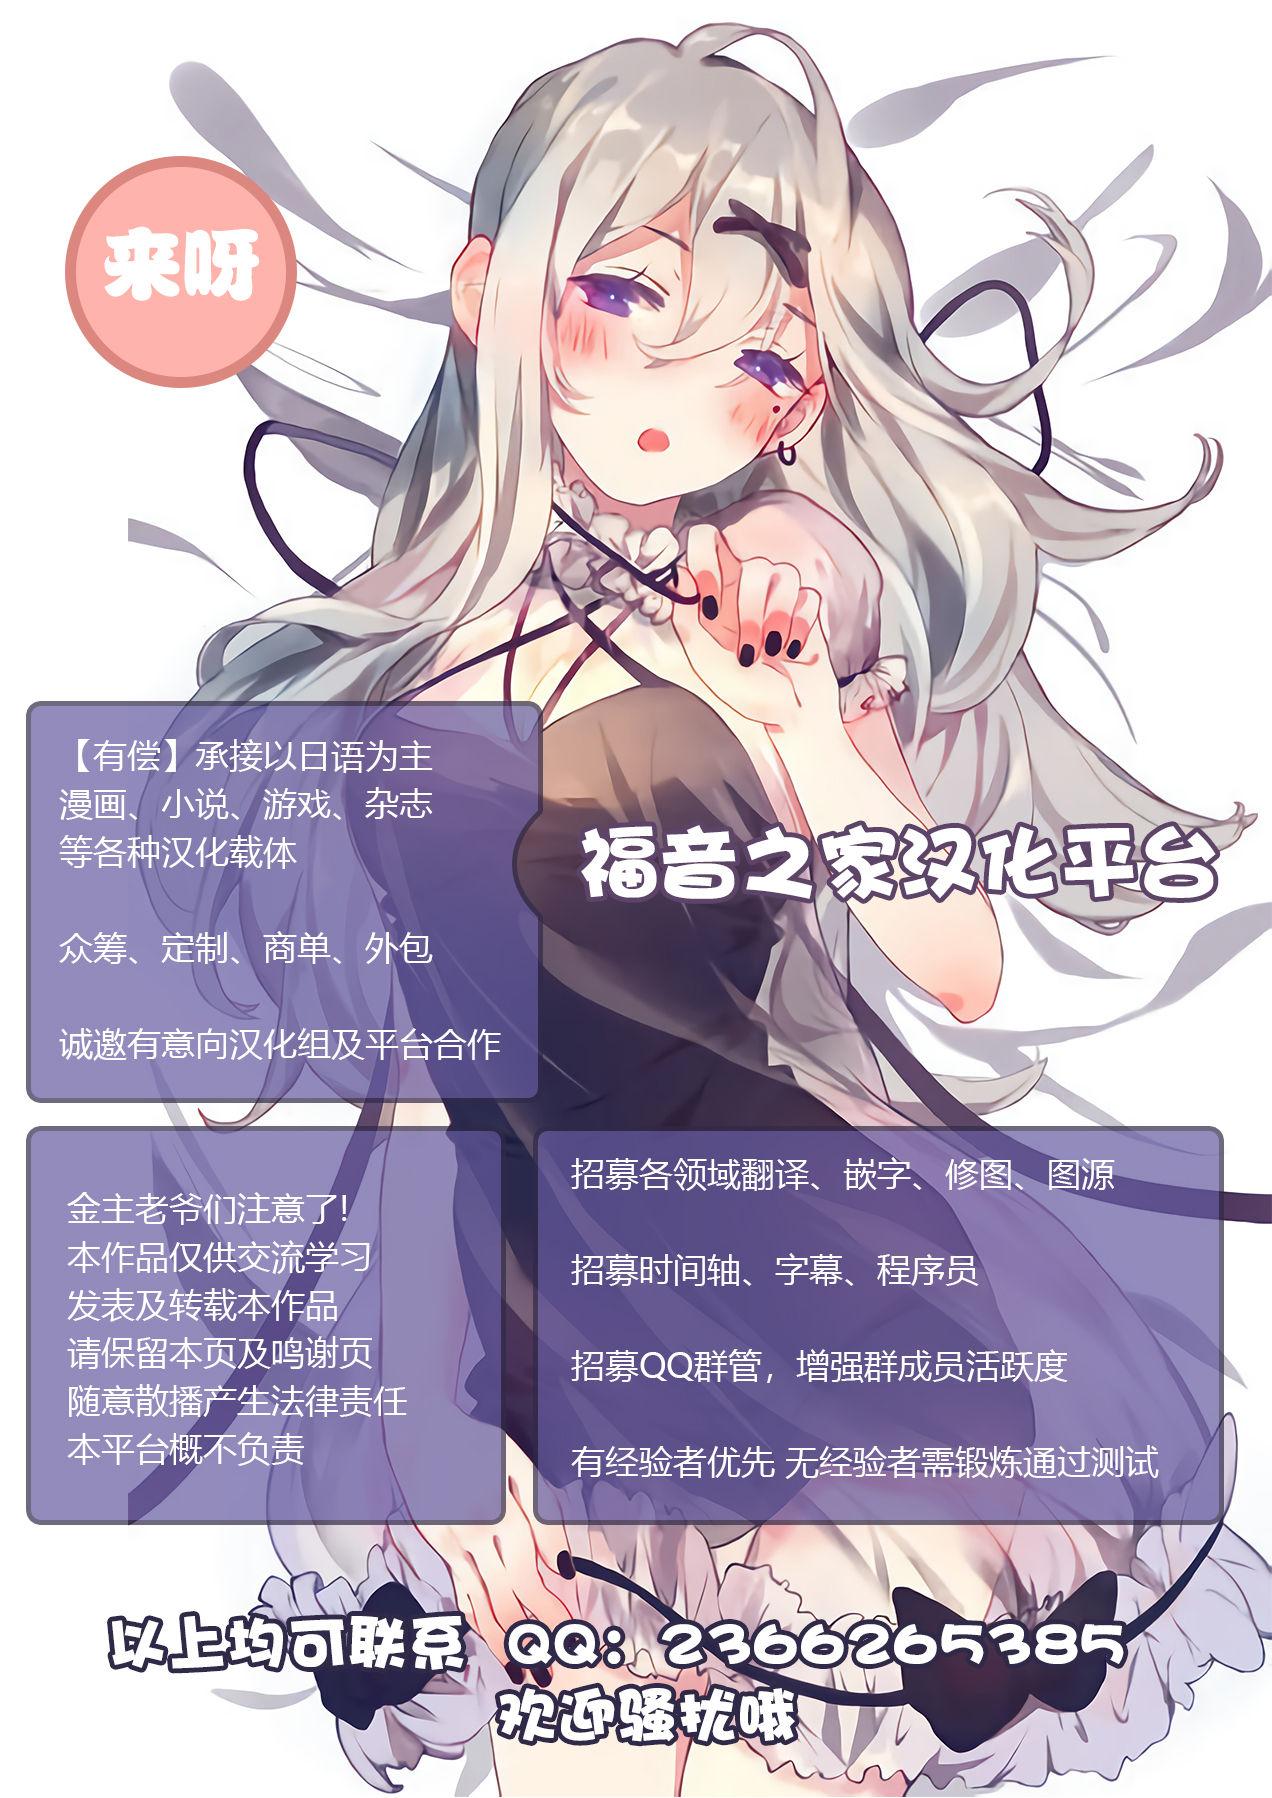 Teacher [Umari-ya (D-2)] Kiriko Route Another #04 ~Nyotai Seikan Poruchio Kaihatsu Hen~ (Sword Art Online)[Chinese]【不可视汉化】 - Sword art online Nipple - Page 36